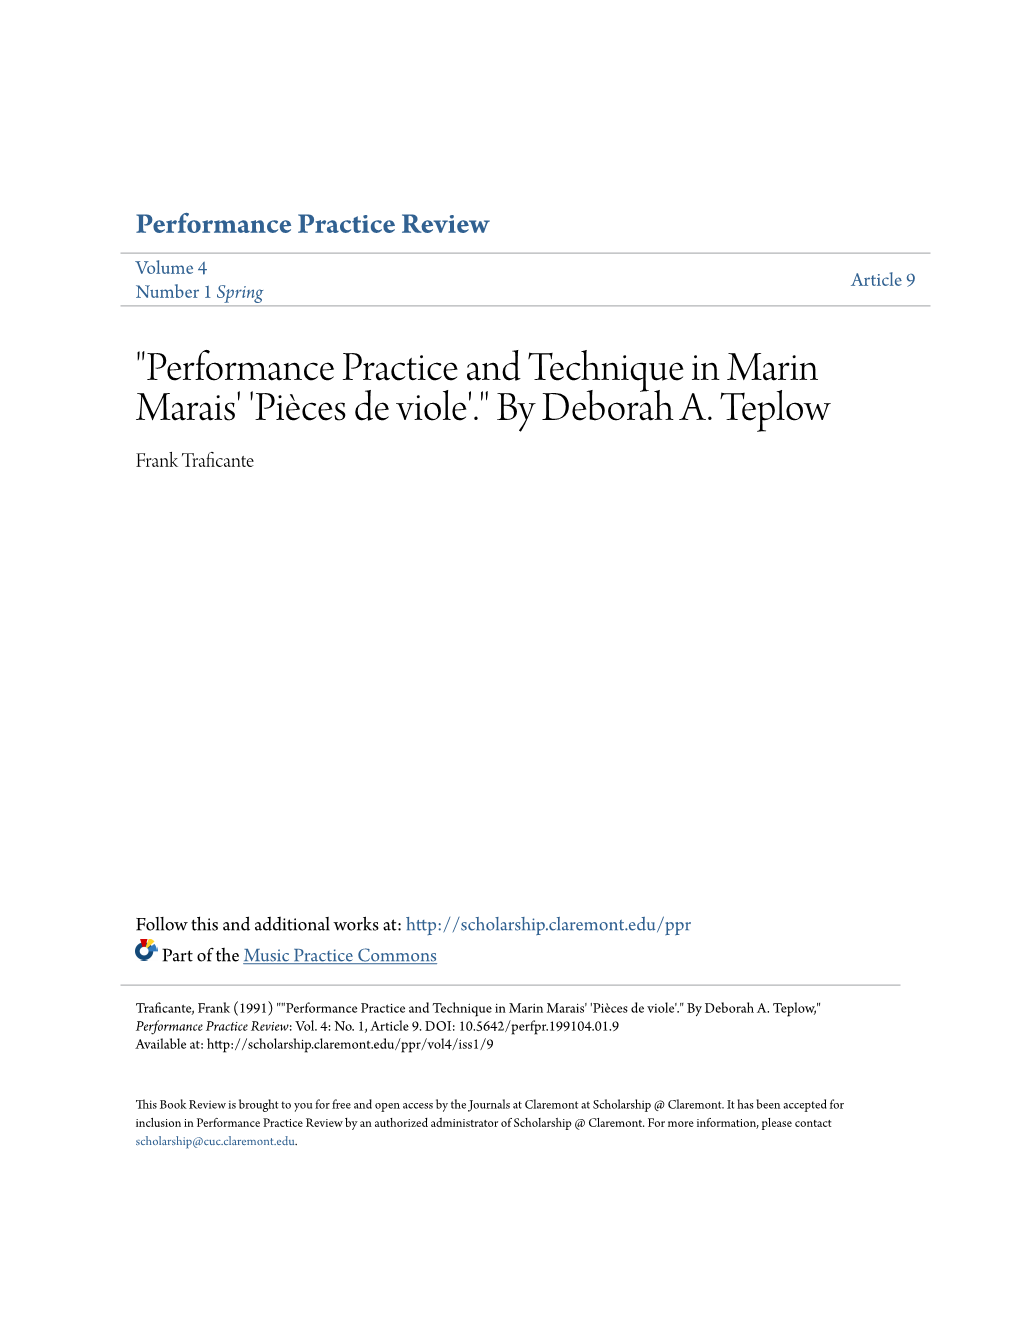 "Performance Practice and Technique in Marin Marais' 'Piã¨Ces De Viole